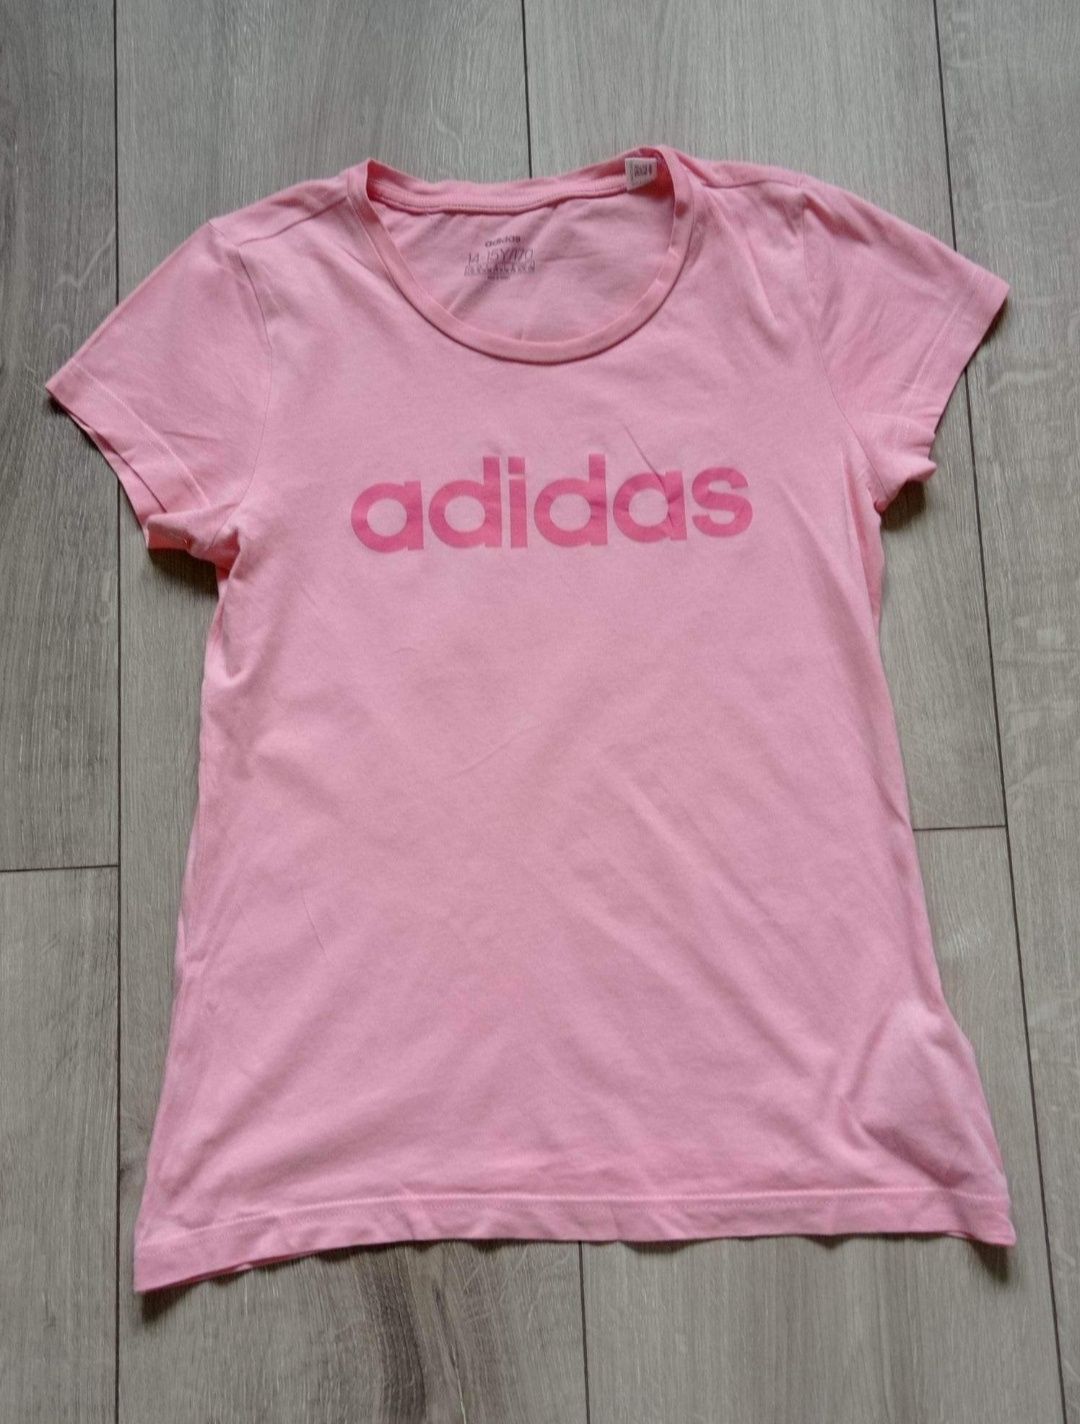 Bluzka różowa Adidas. Kurowice • OLX.pl